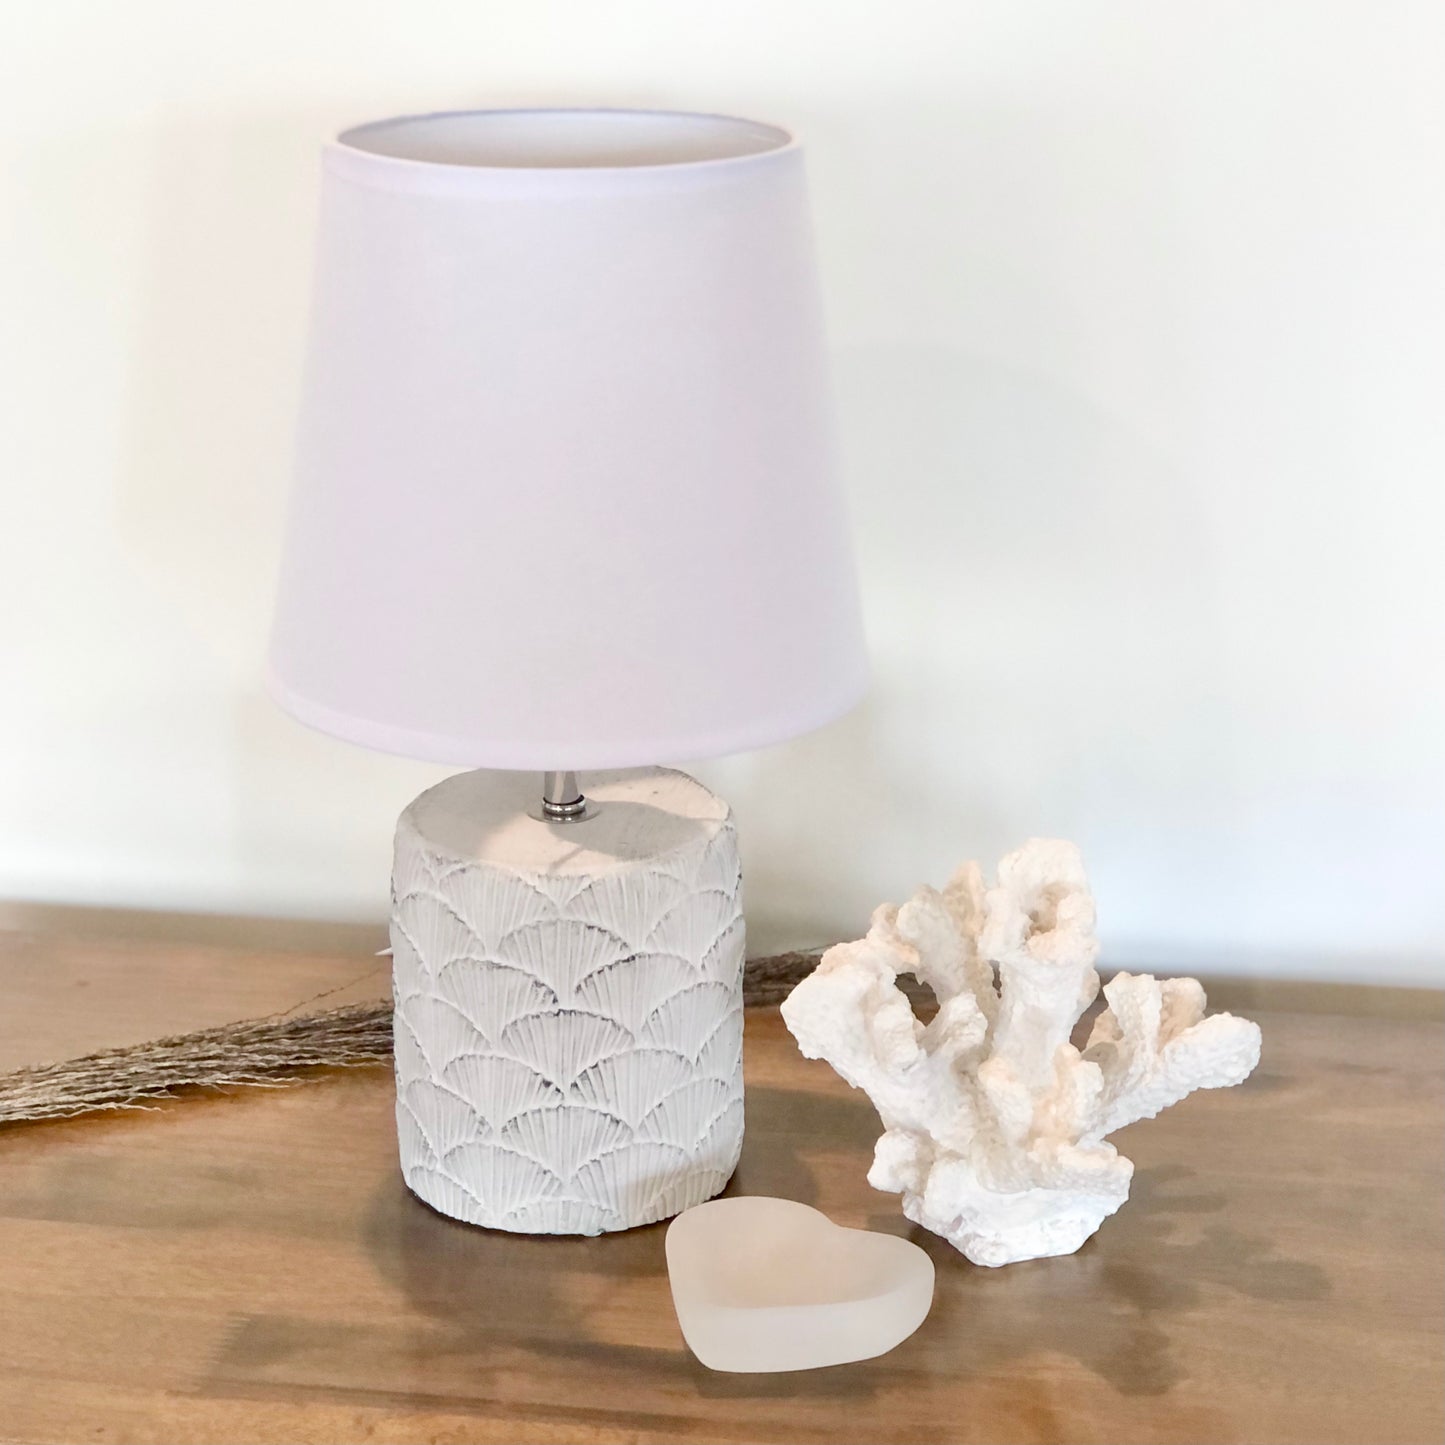 Ceramic Hamptons shell lamp